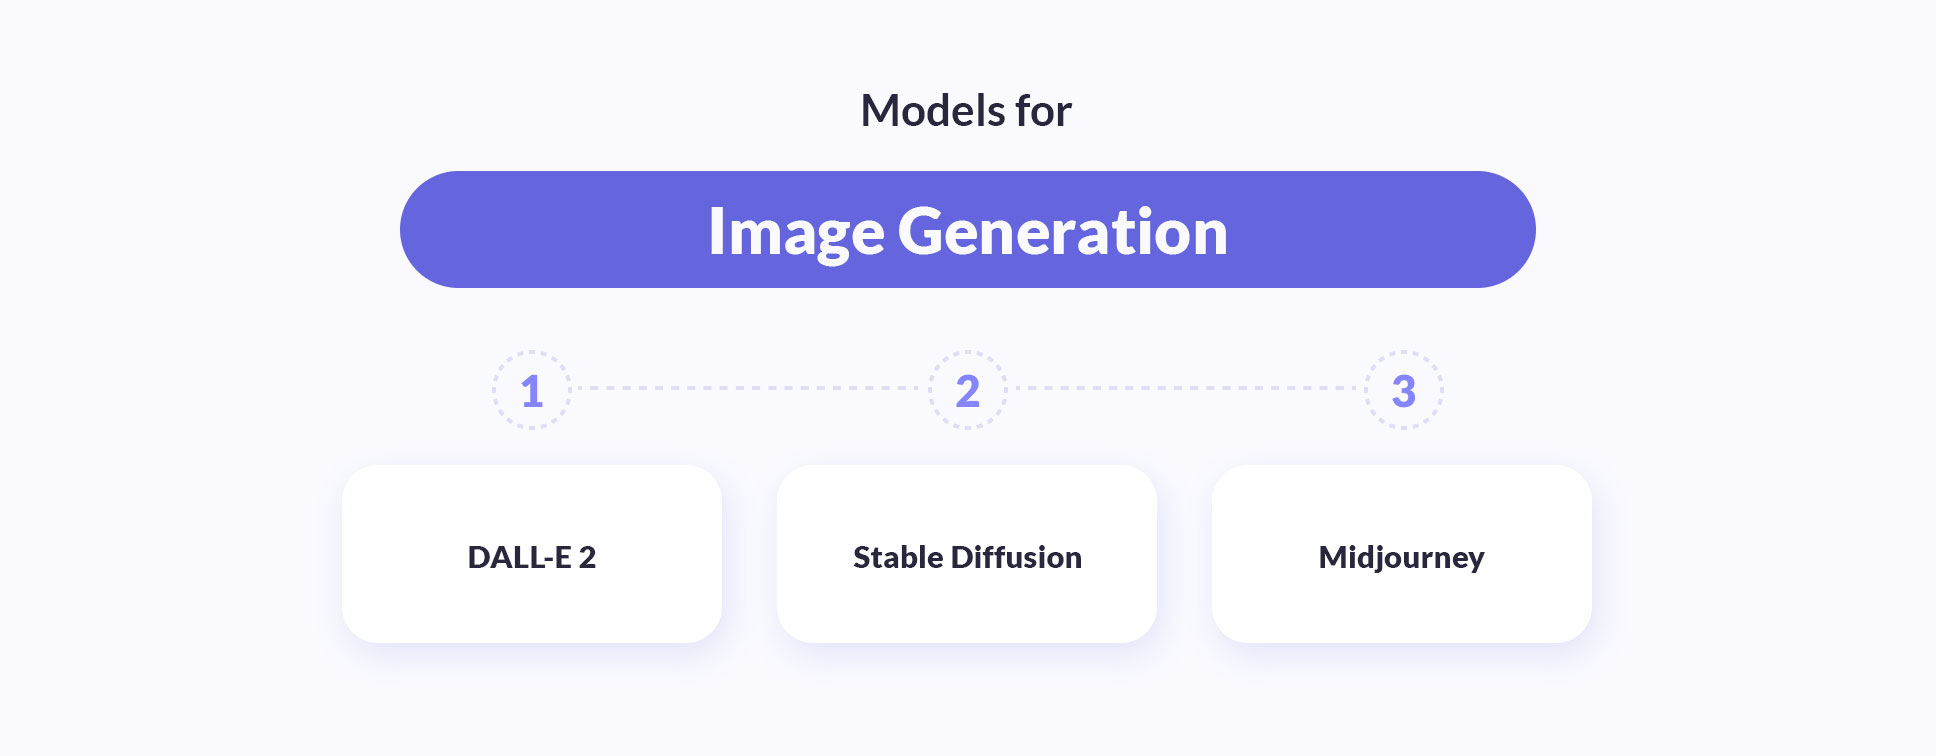 Models for image generation